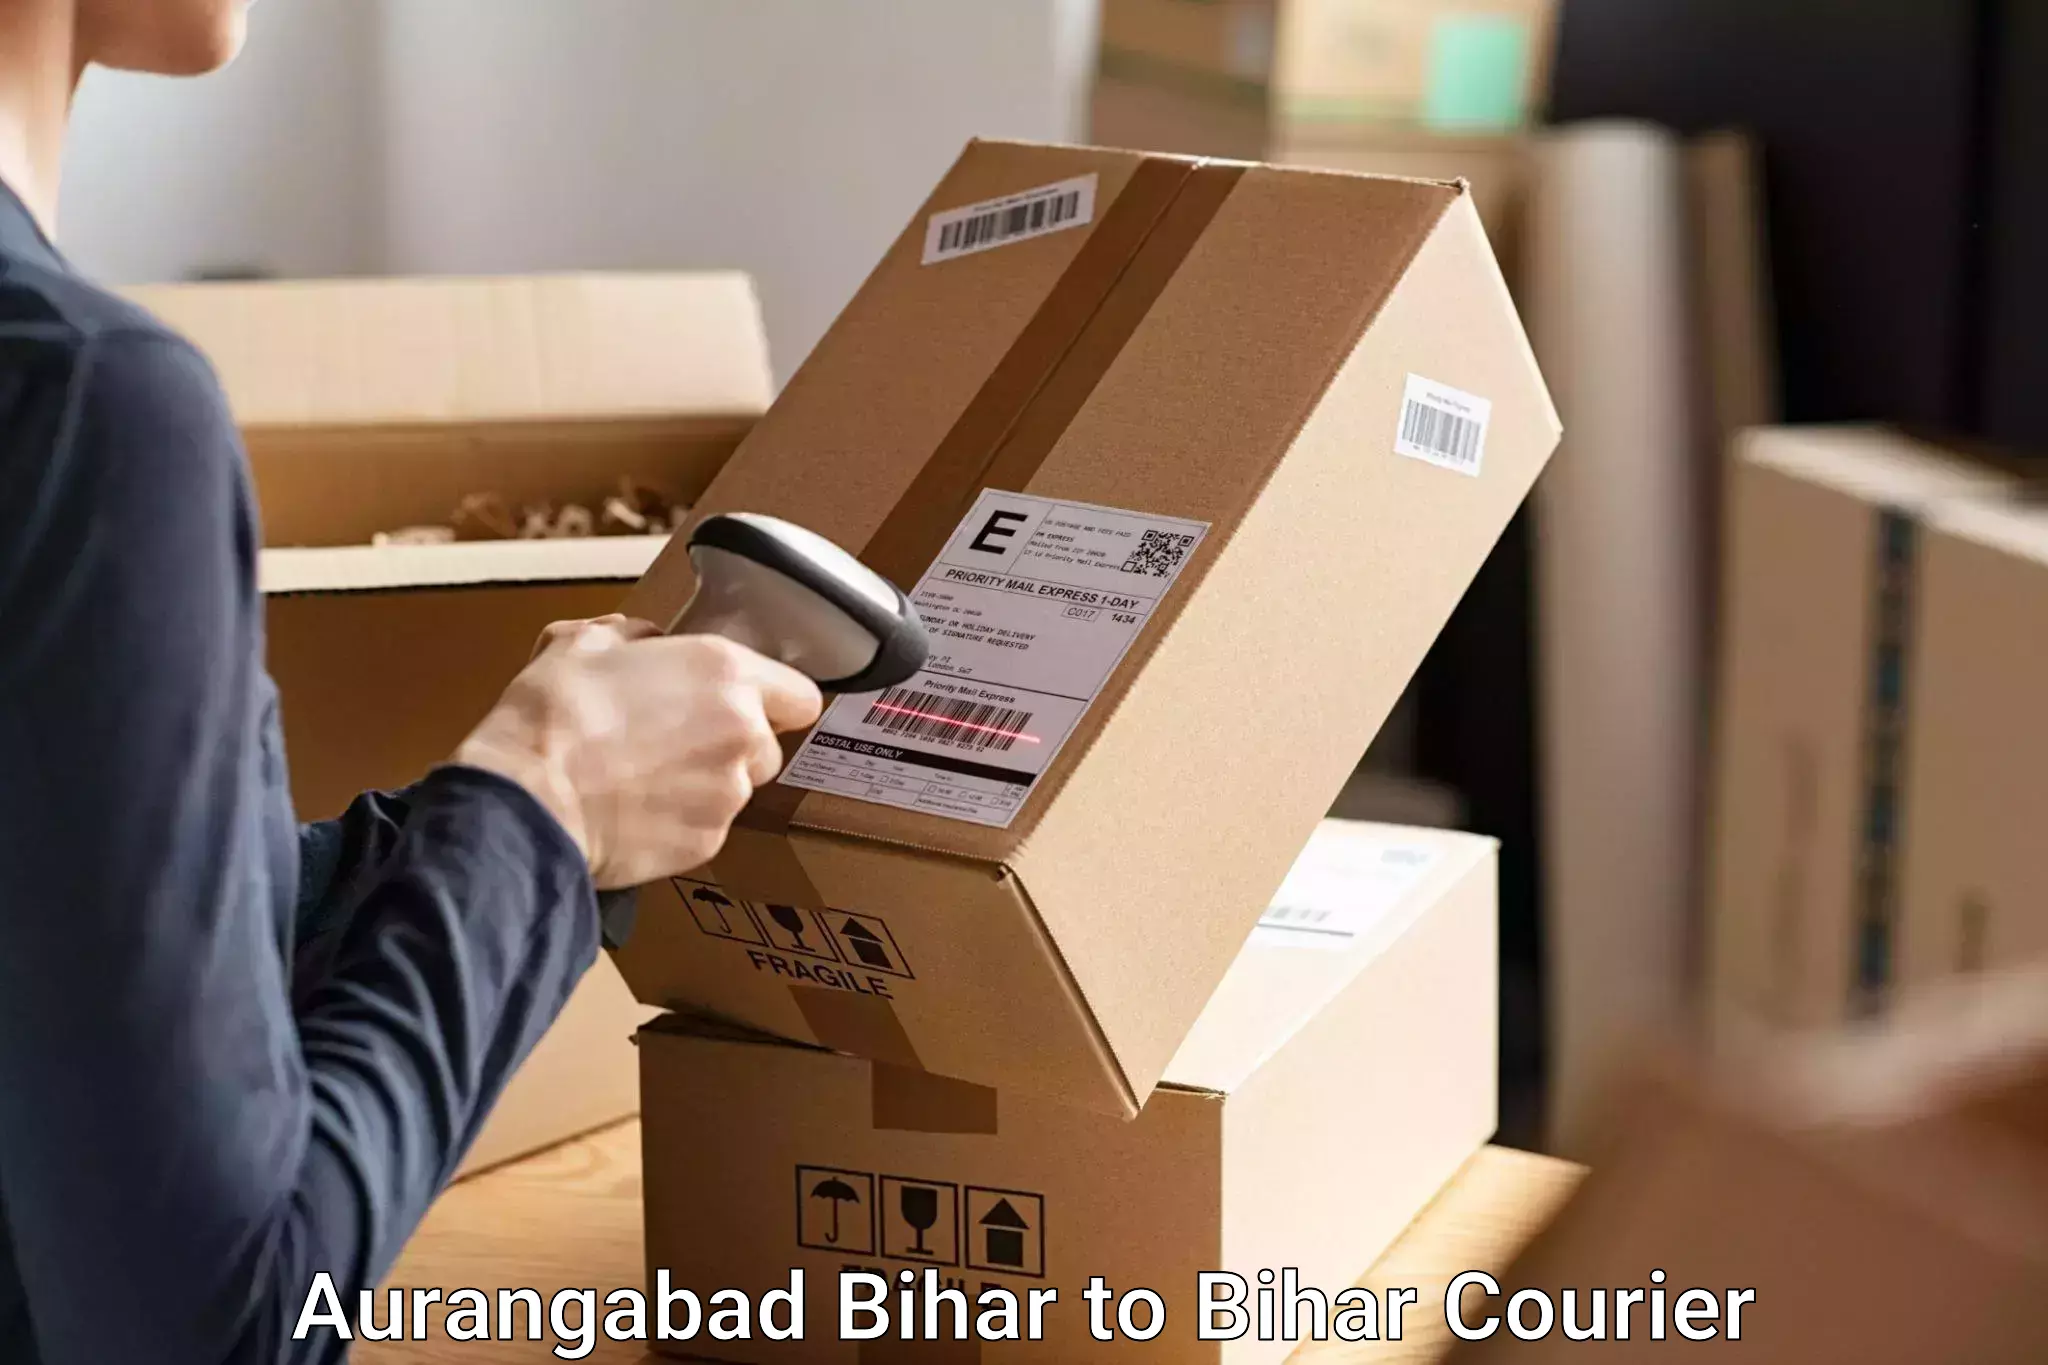 Trackable baggage shipping Aurangabad Bihar to Vaishali